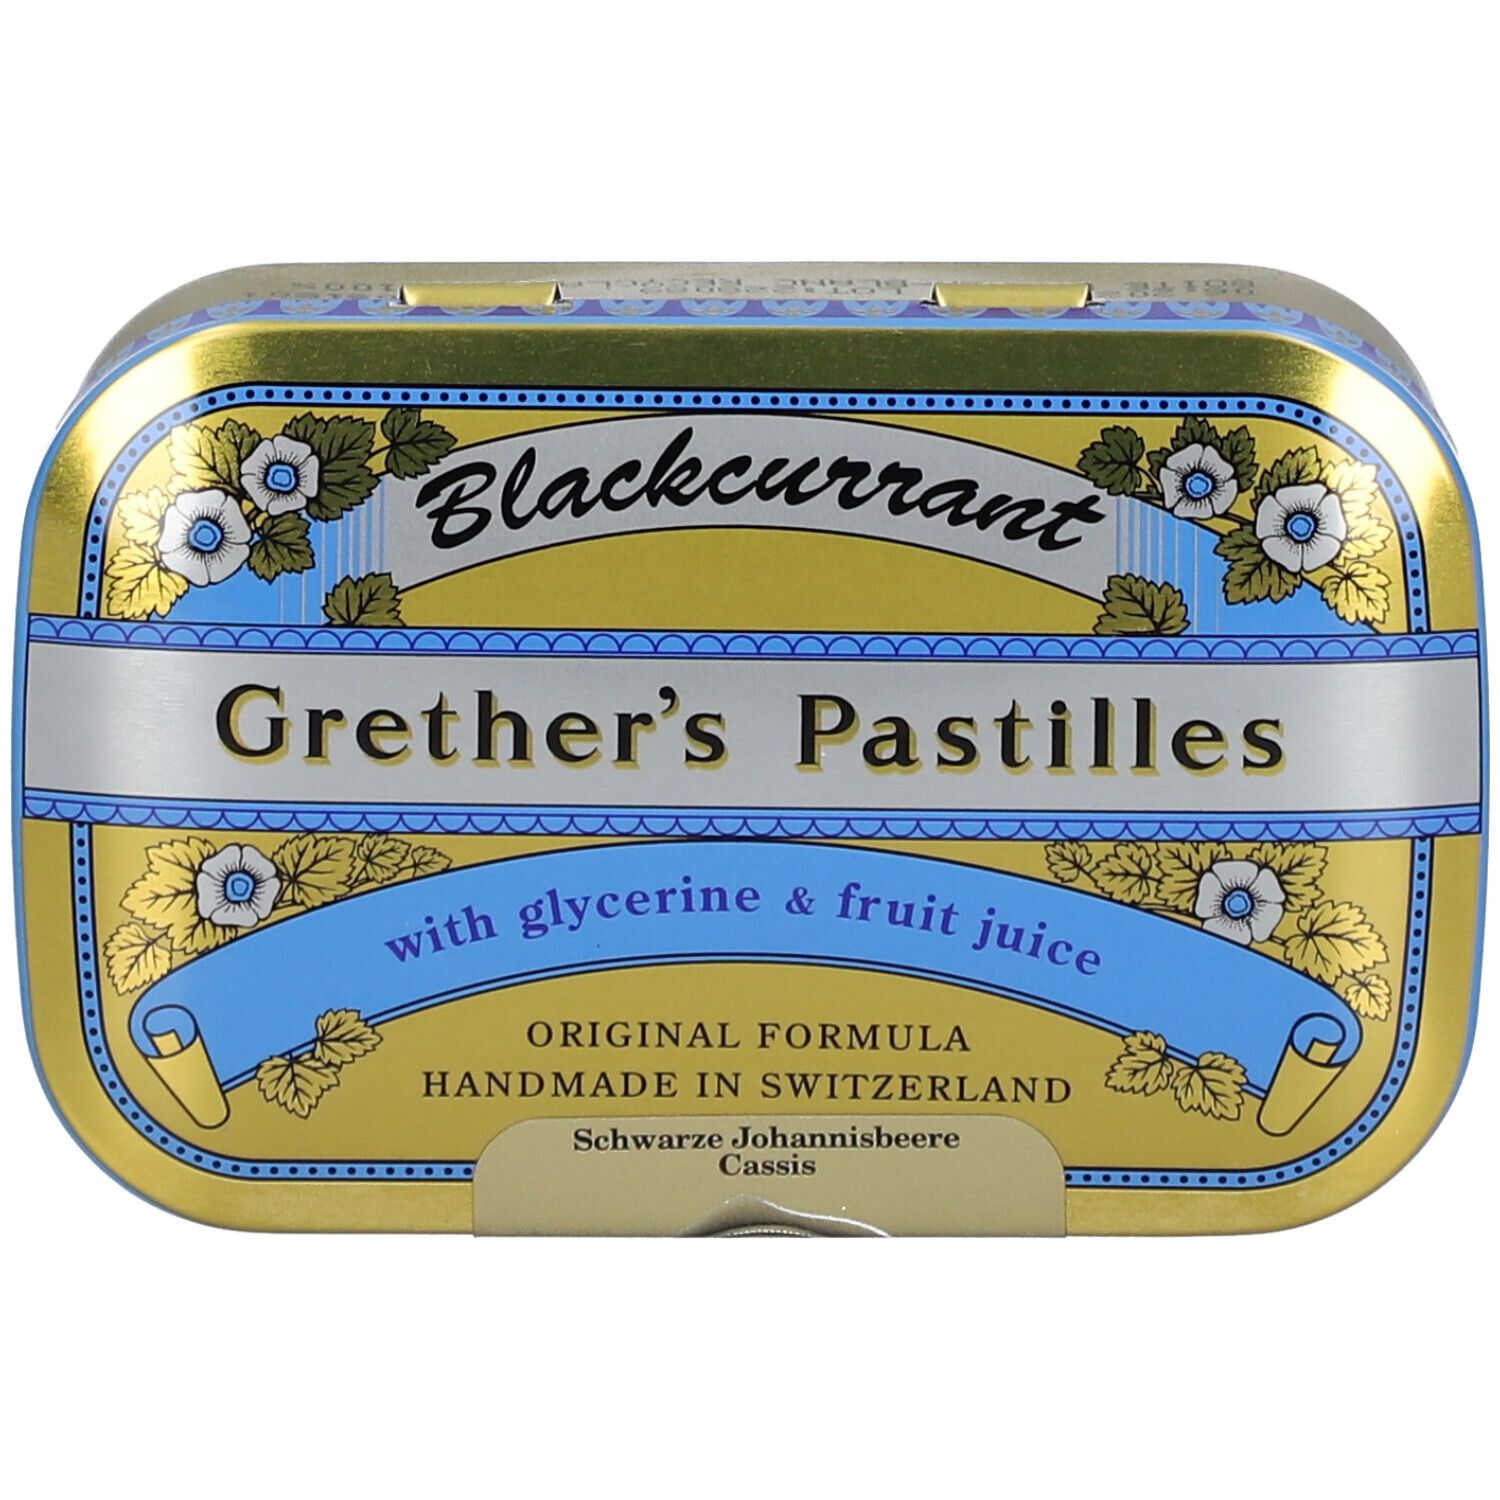 Image of Grether's Blackcurrant Pastillen